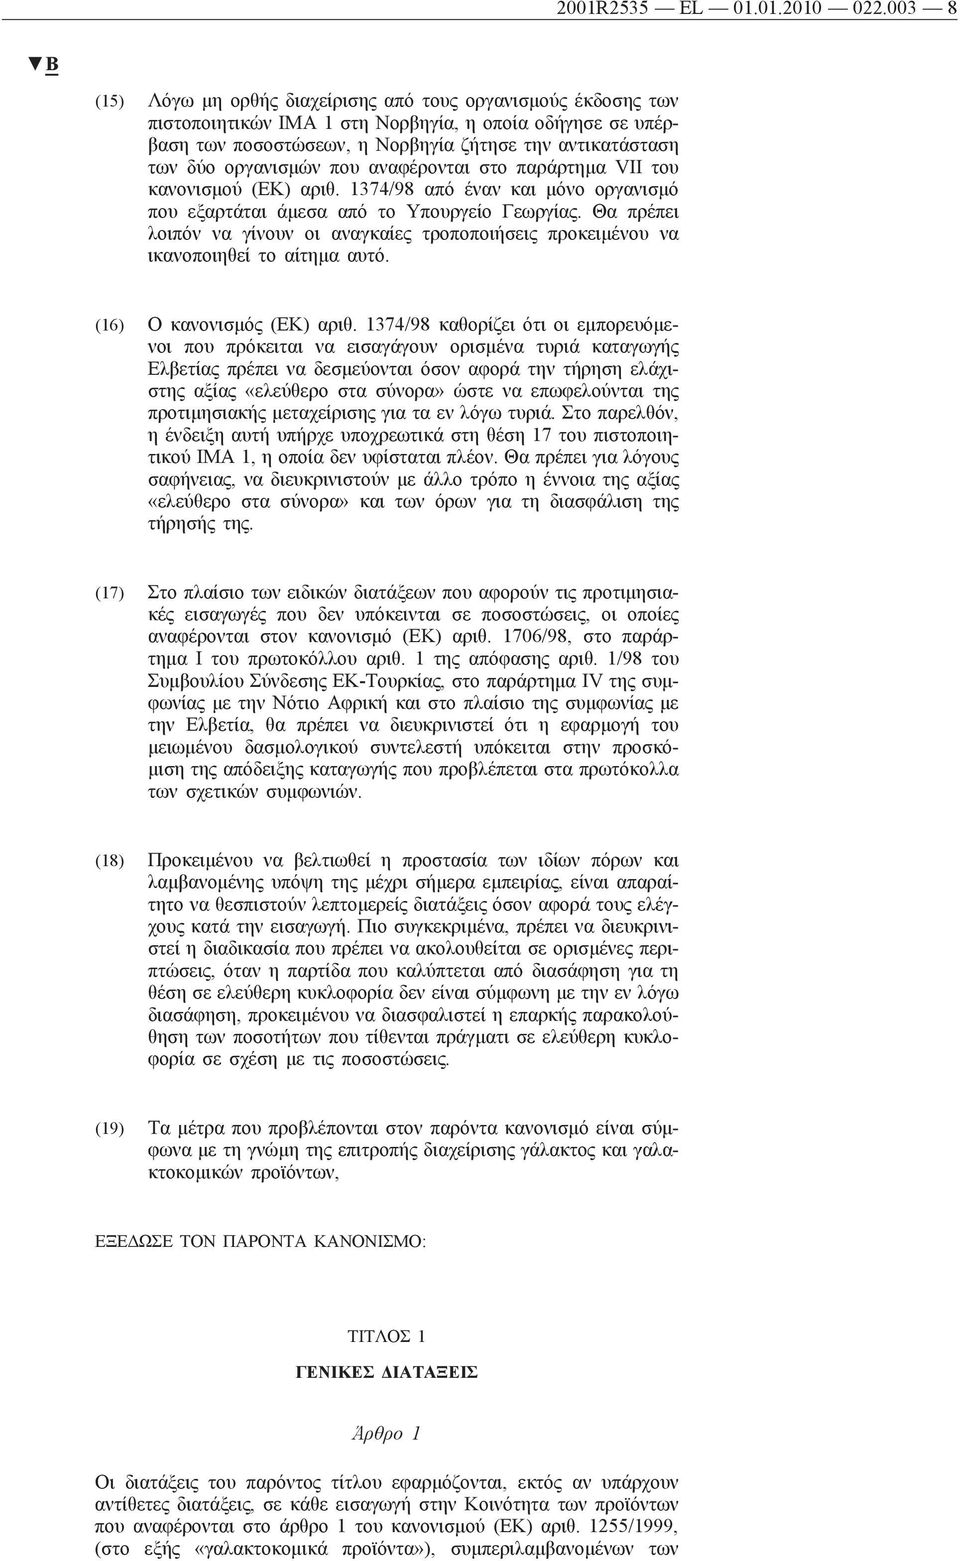 οργανισμών που αναφέρονται στο παράρτημα VII του κανονισμού (ΕΚ) αριθ. 1374/98 από έναν και μόνο οργανισμό που εξαρτάται άμεσα από το Υπουργείο Γεωργίας.